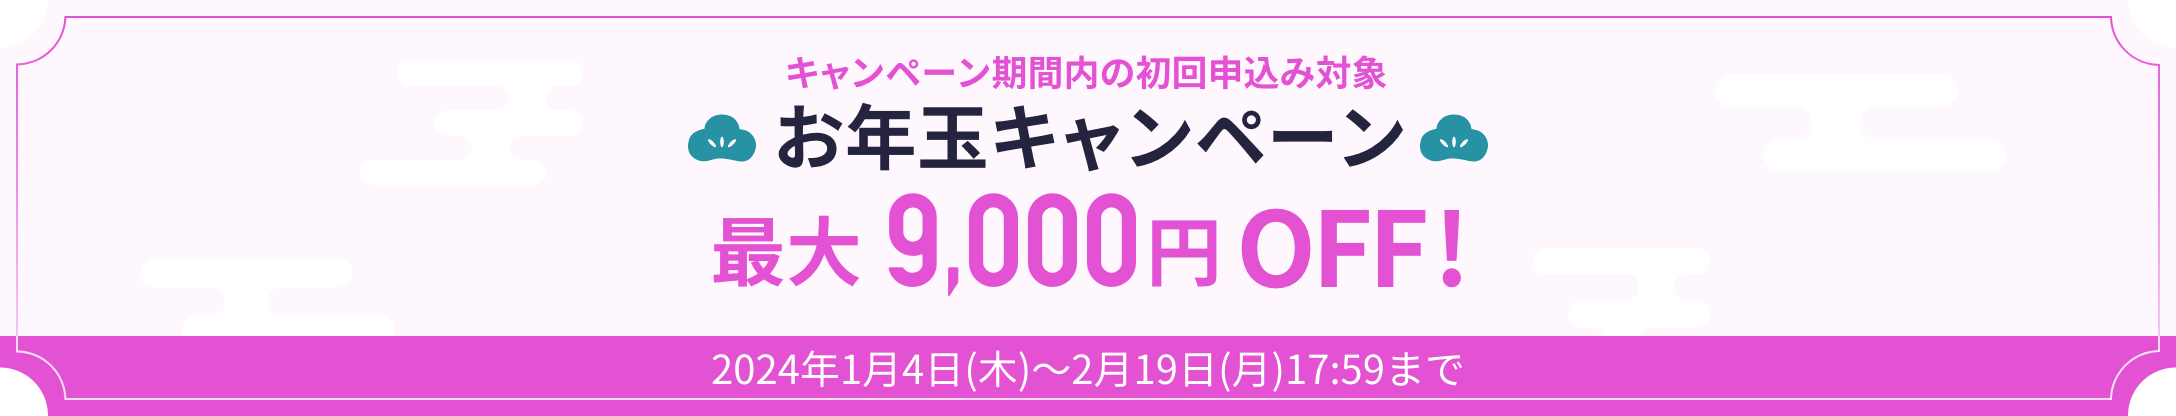 キャンペーン期間内の初回申込み対象 お年玉キャンペーン最大9,000OFF!